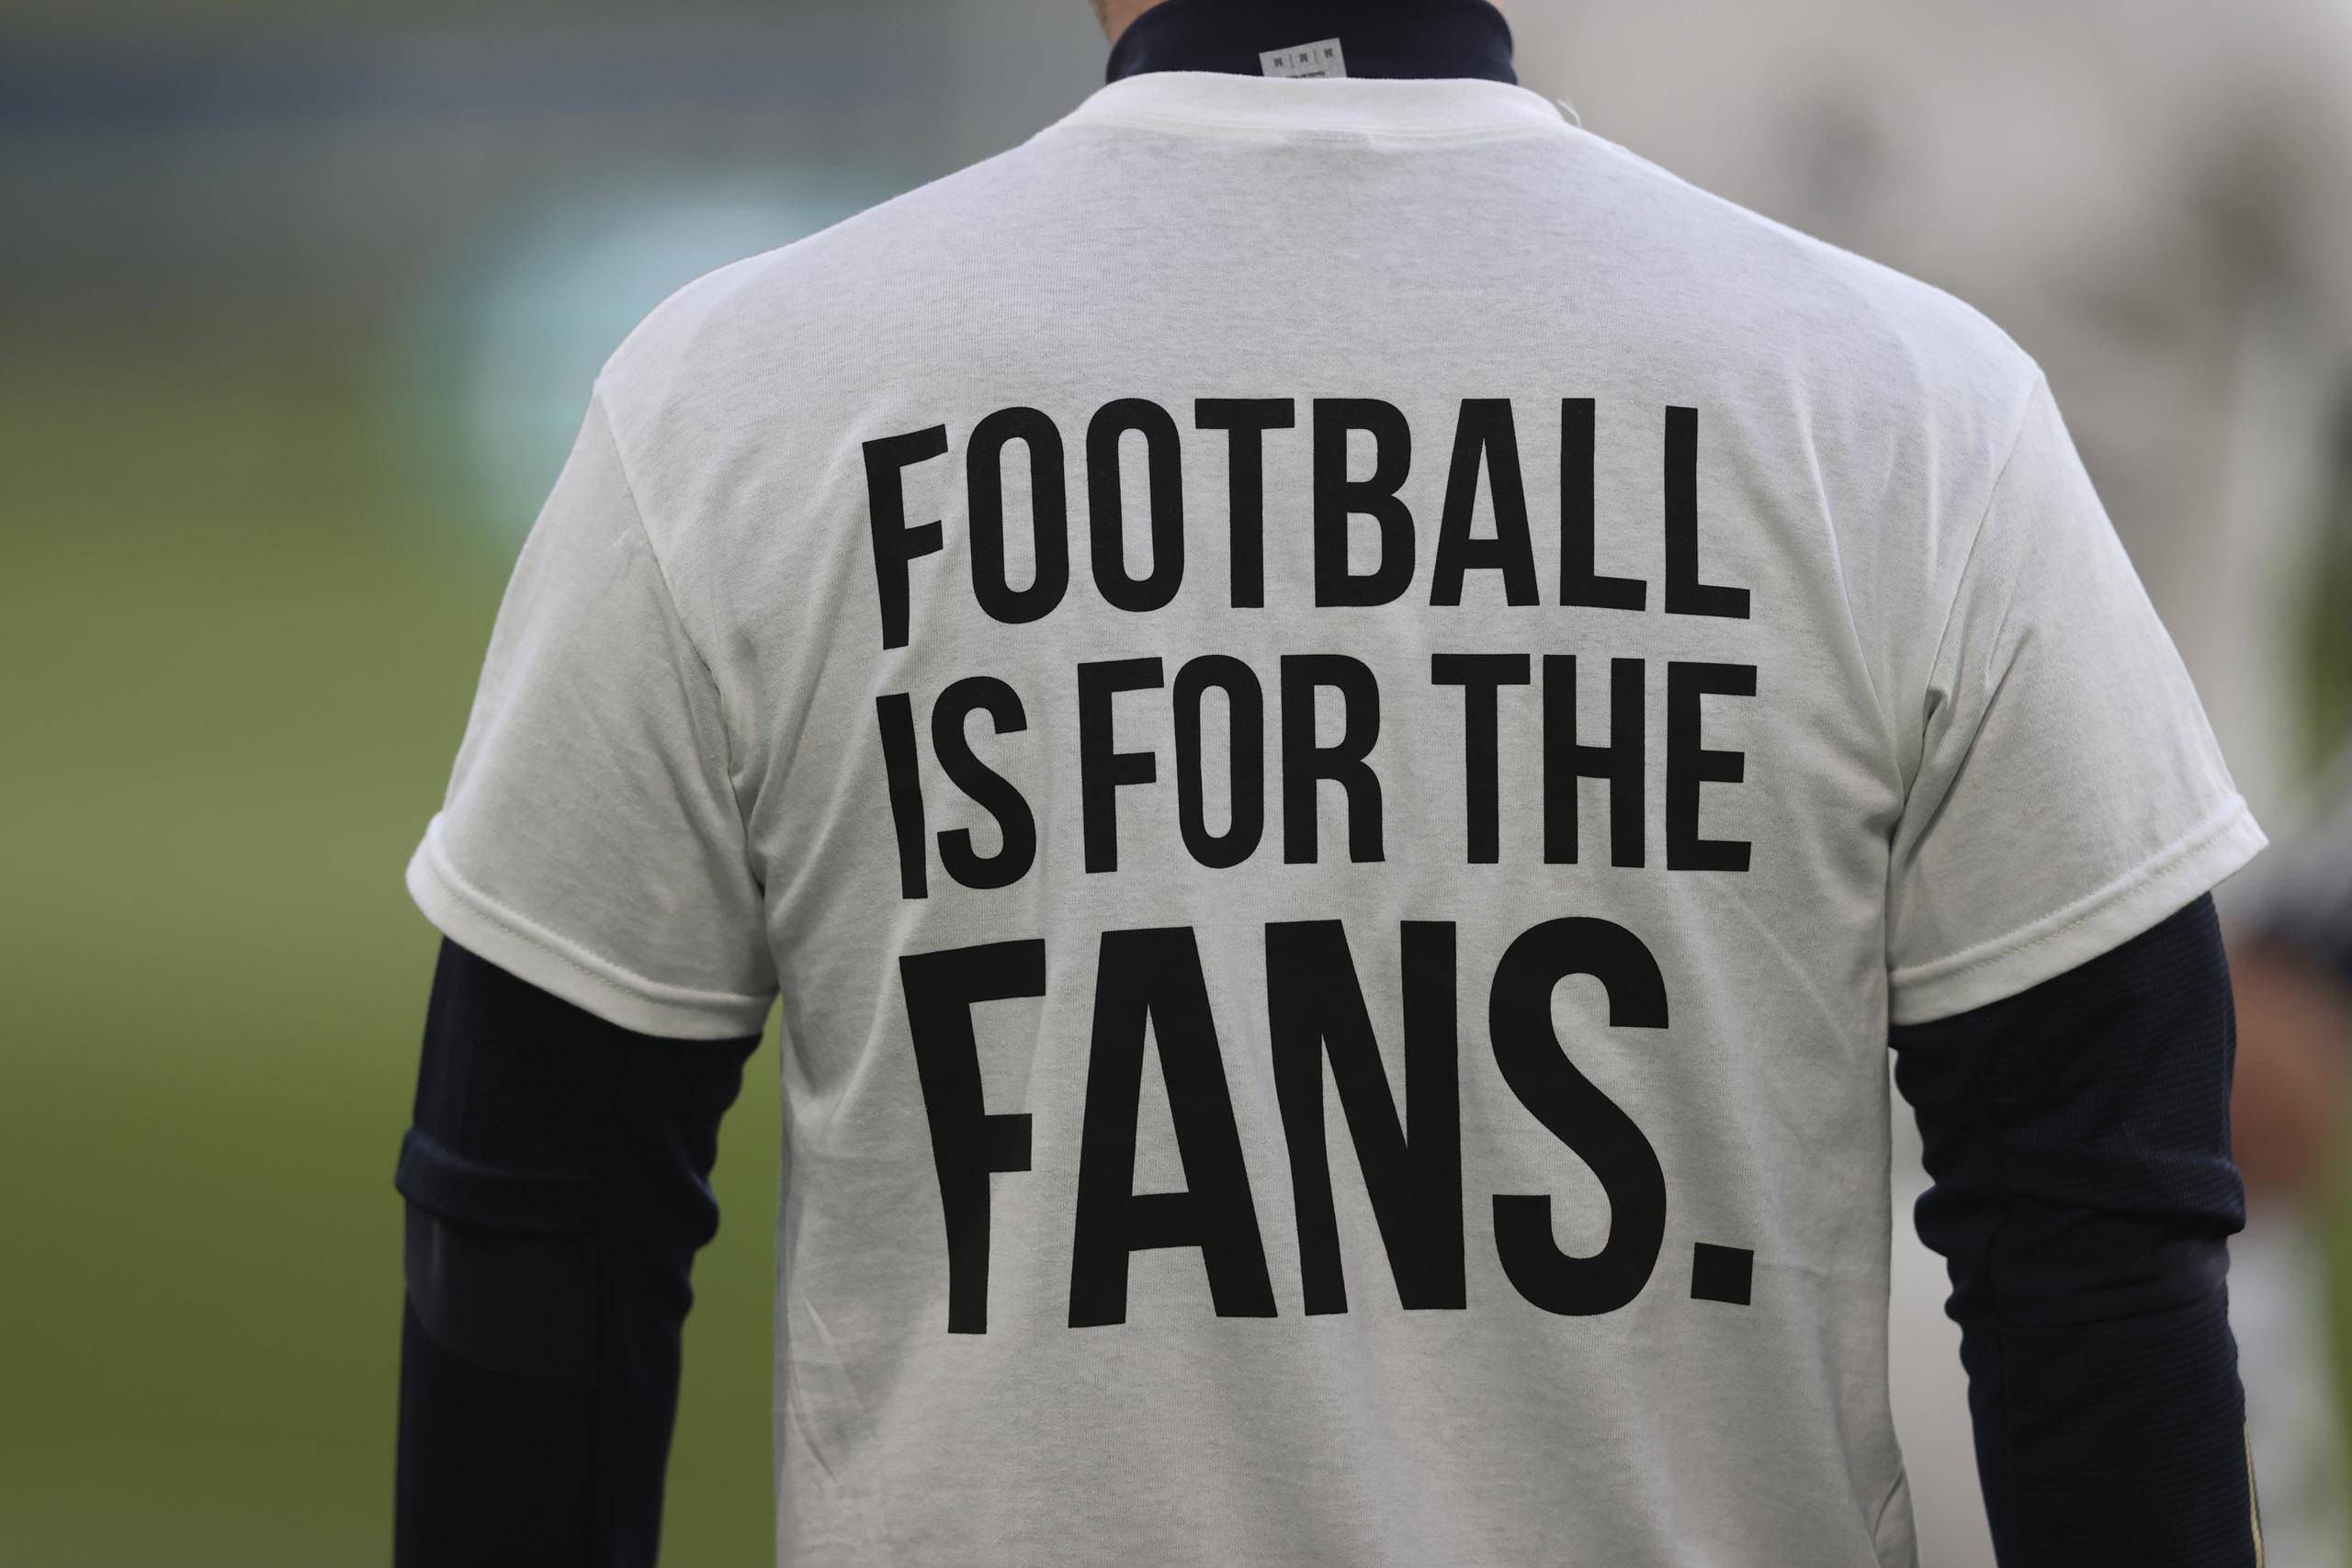 Un jugador del Leeds United porta una camiseta con el mensaje "El fútbol es para los aficionados" previo a un partido de la Liga Premier inglesa contra el Liverpool en Leeds, Inglaterra.